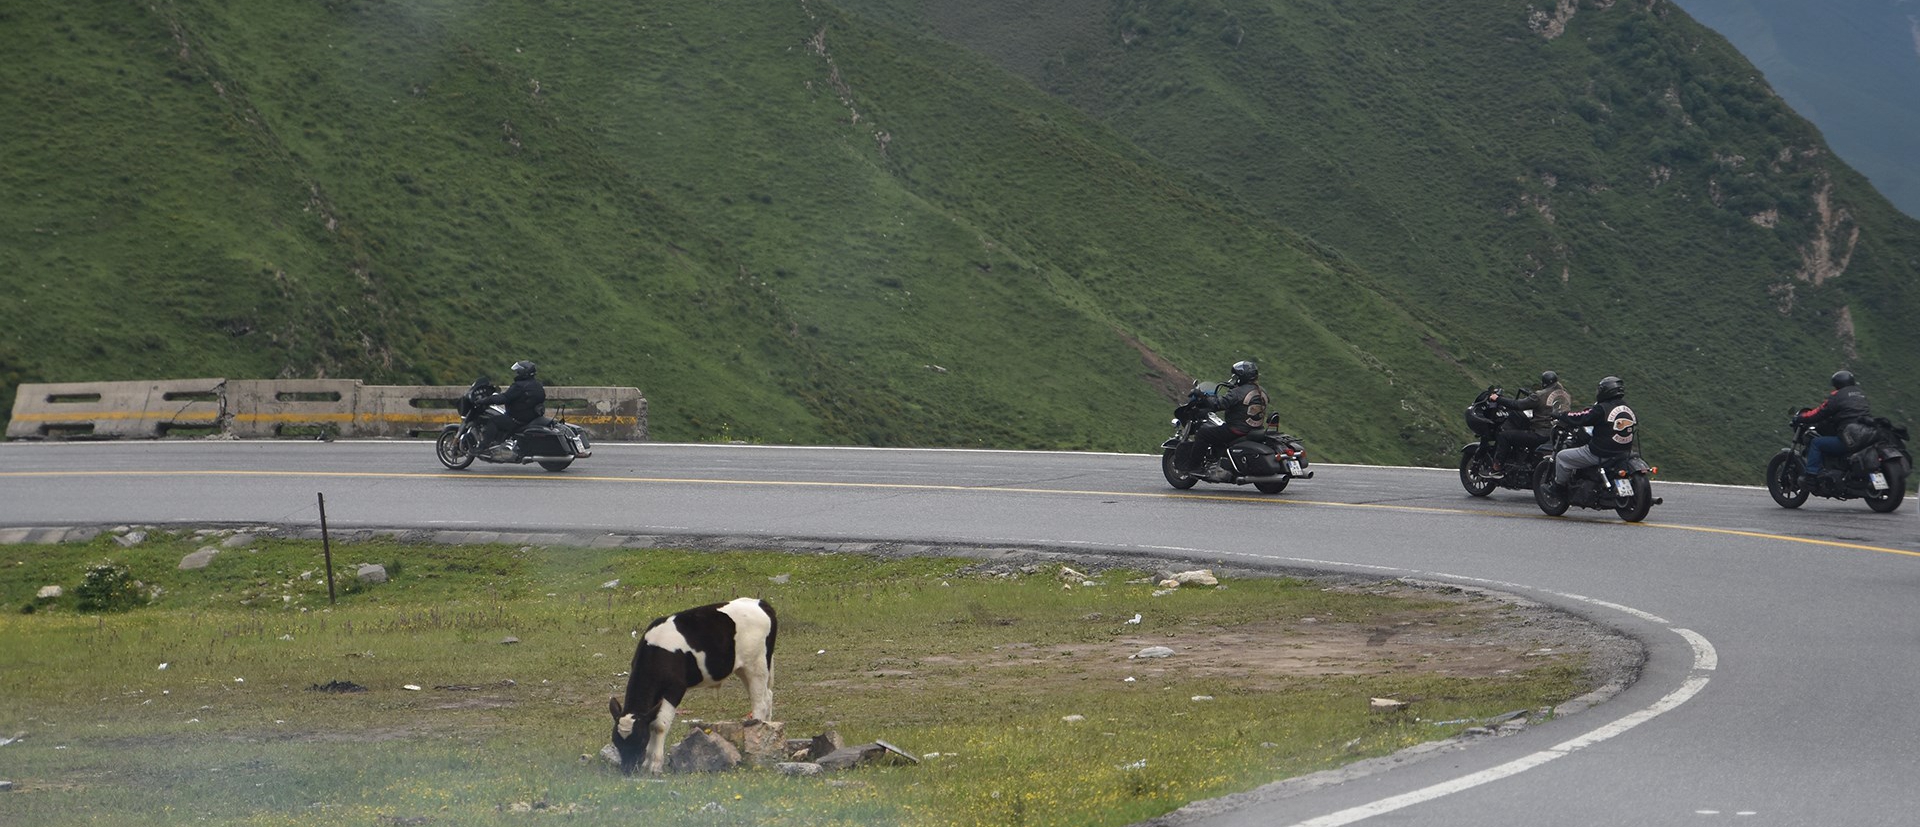 Voyage à Moto Louée du Sichuan au Tibet sur Autoroute G318